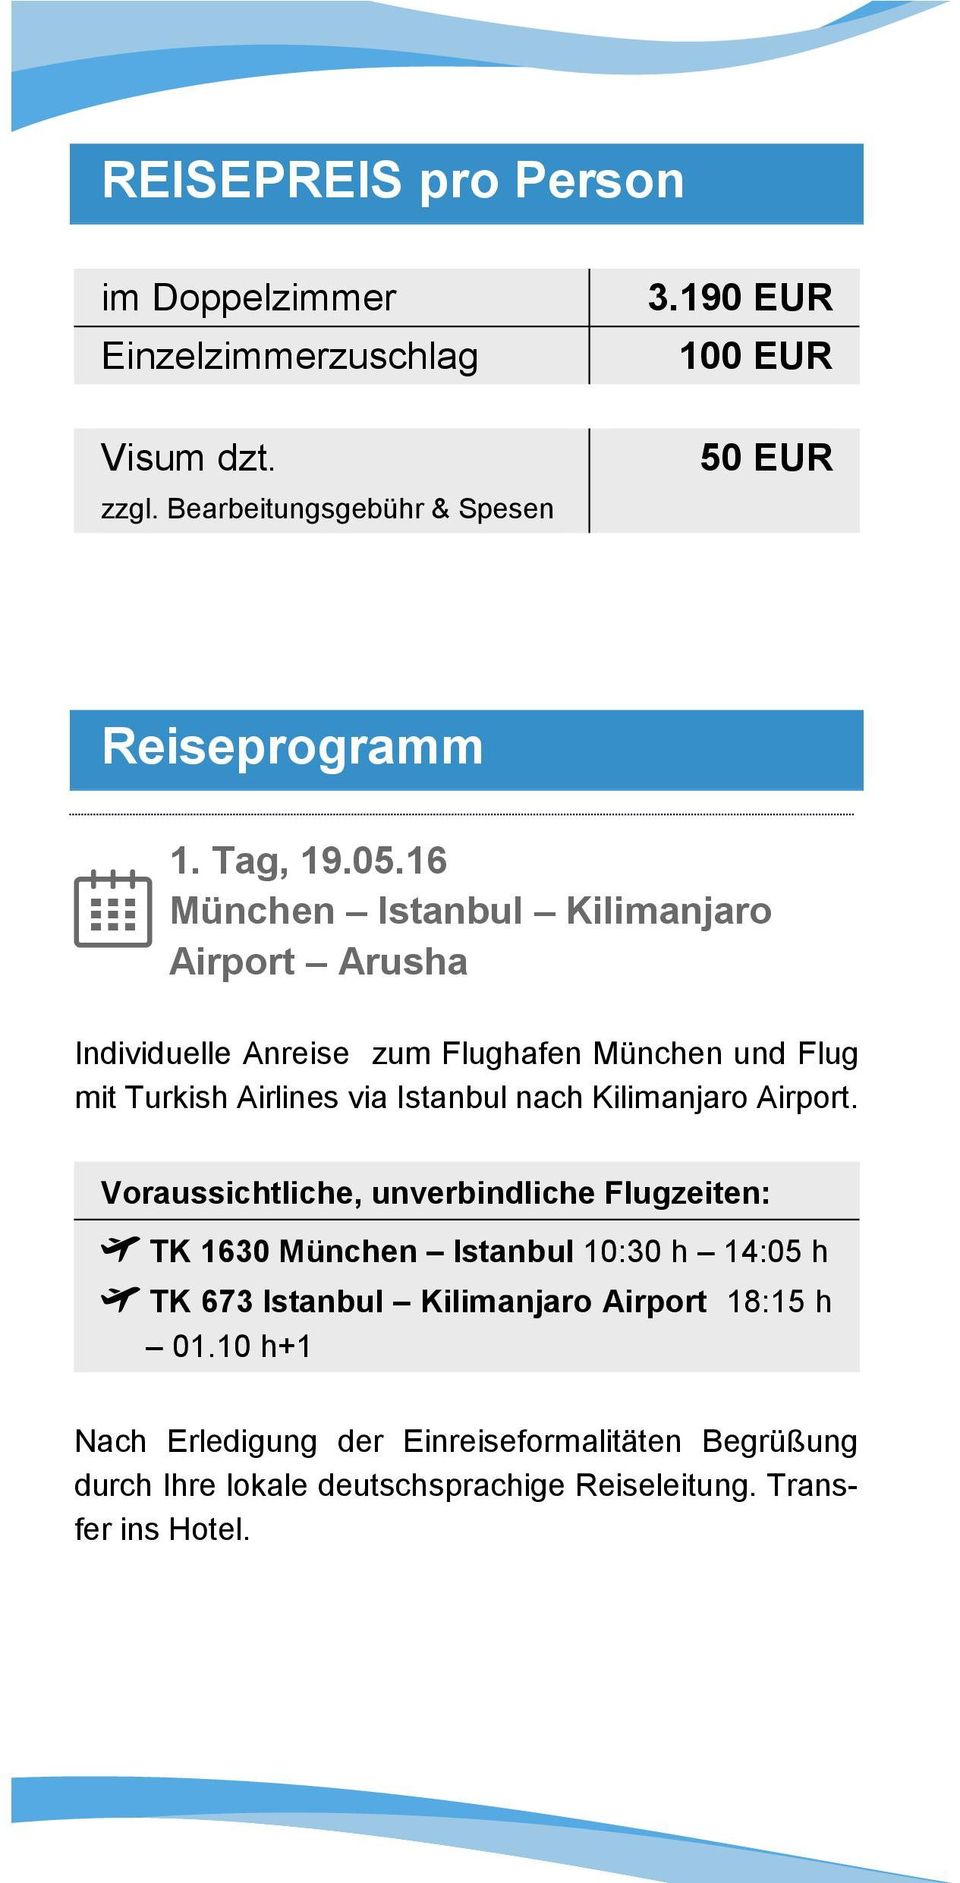 16 München Istanbul Kilimanjaro Airport Arusha Individuelle Anreise zum Flughafen München und Flug mit Turkish Airlines via Istanbul nach